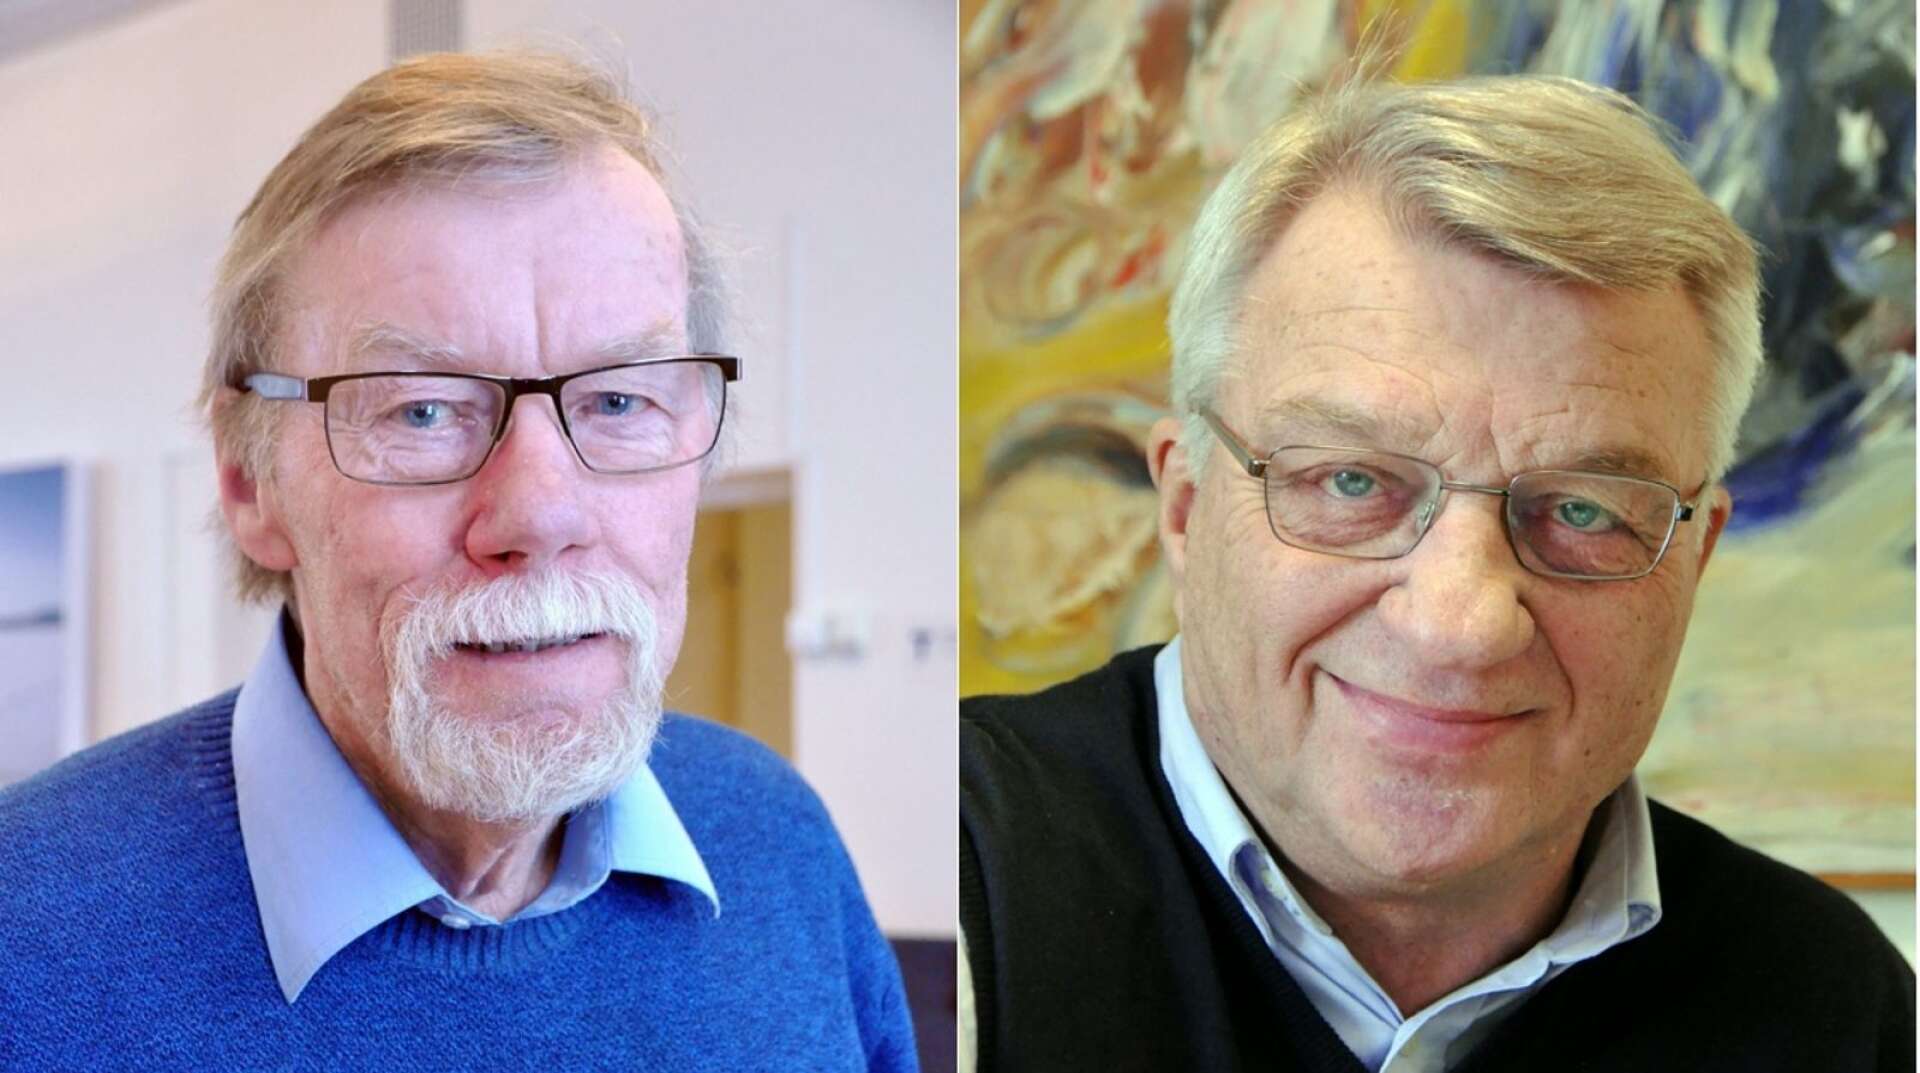 Författarna av inlägget Jimmy Bjerkansmo (C) och Stig Bertilsson (M).